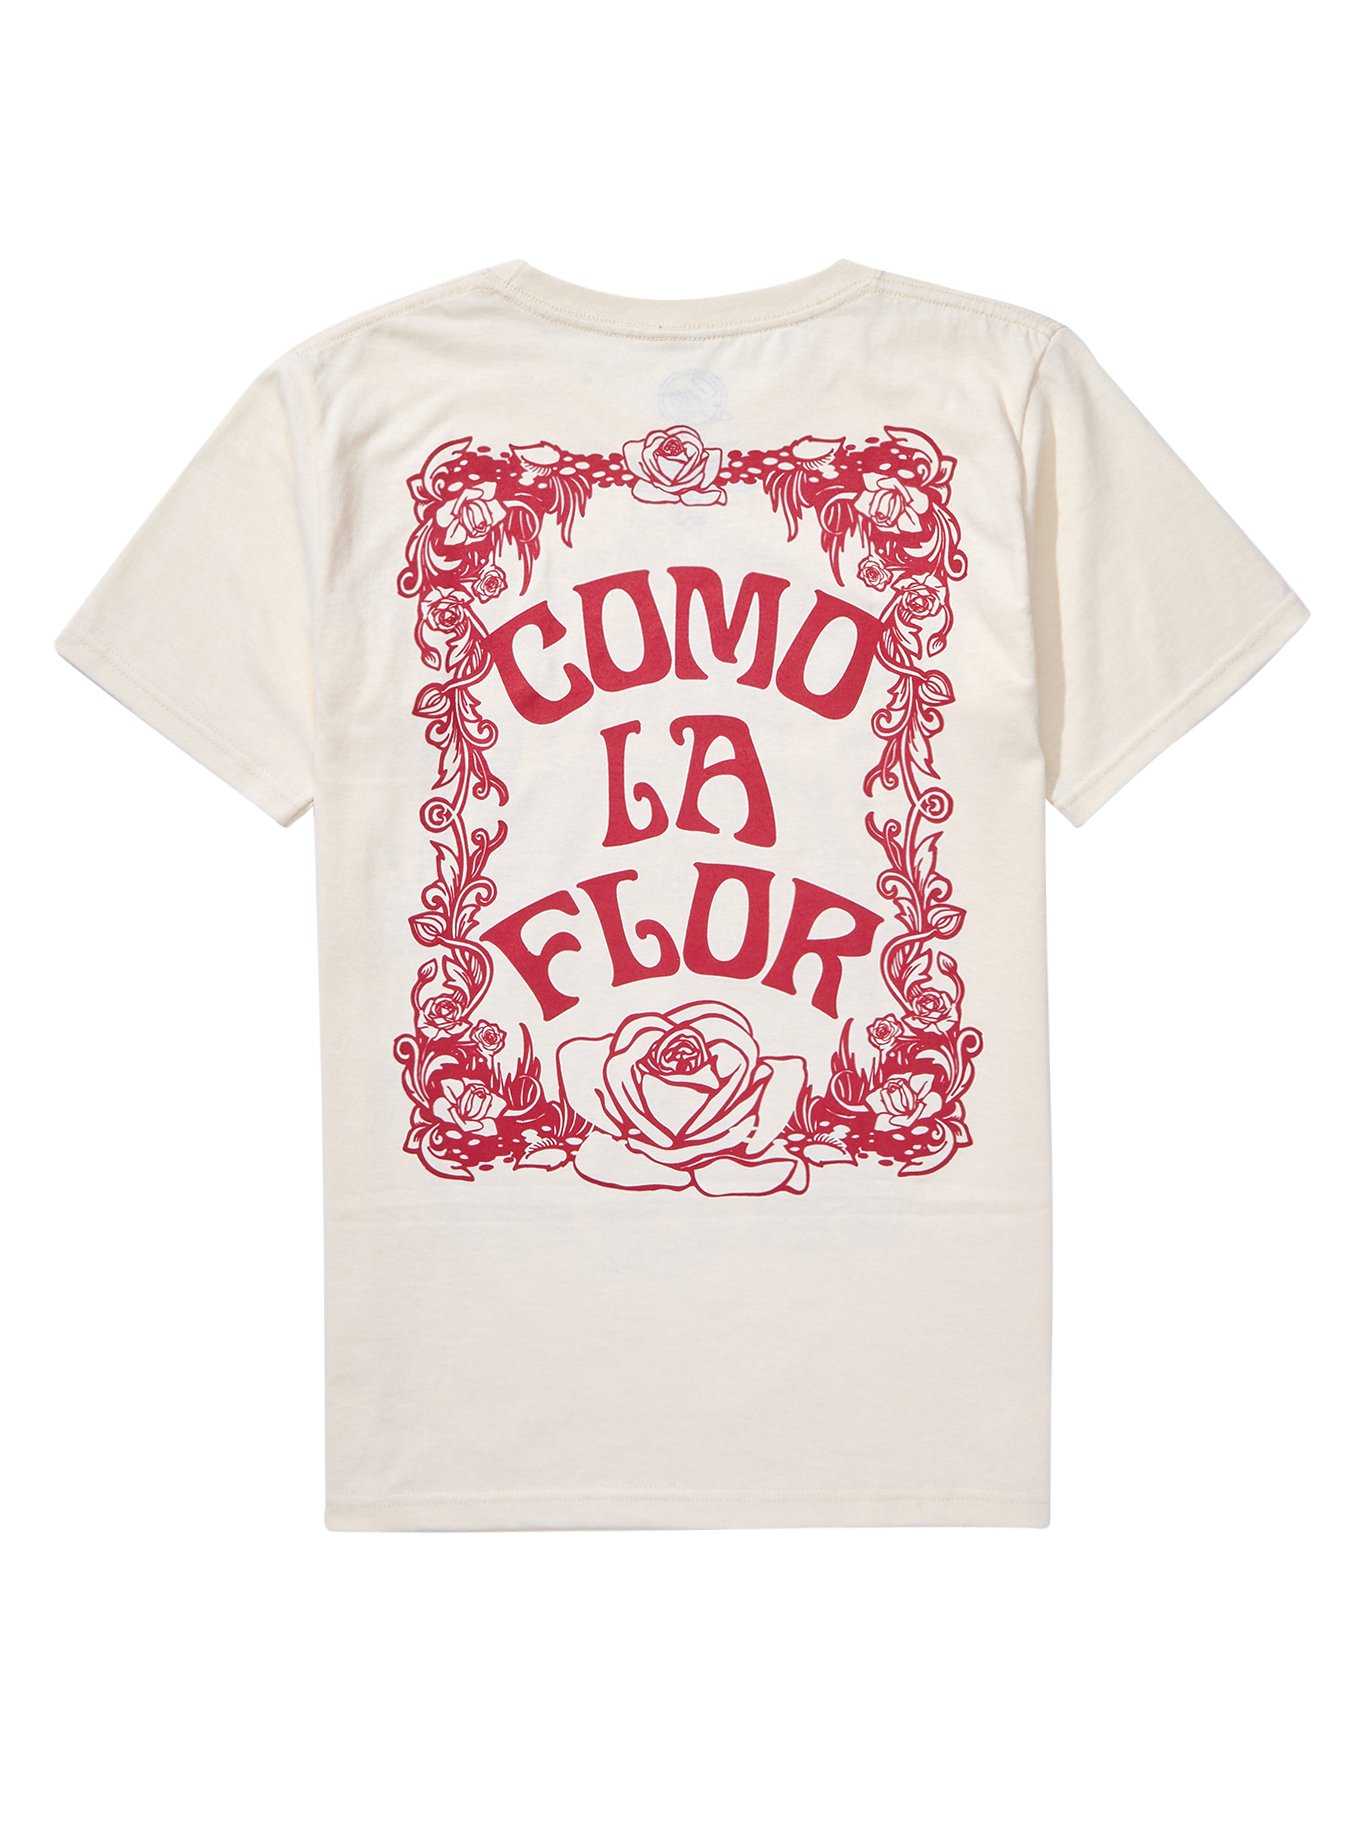 Selena Como La Flor Boyfriend Fit Girls T-Shirt, , hi-res